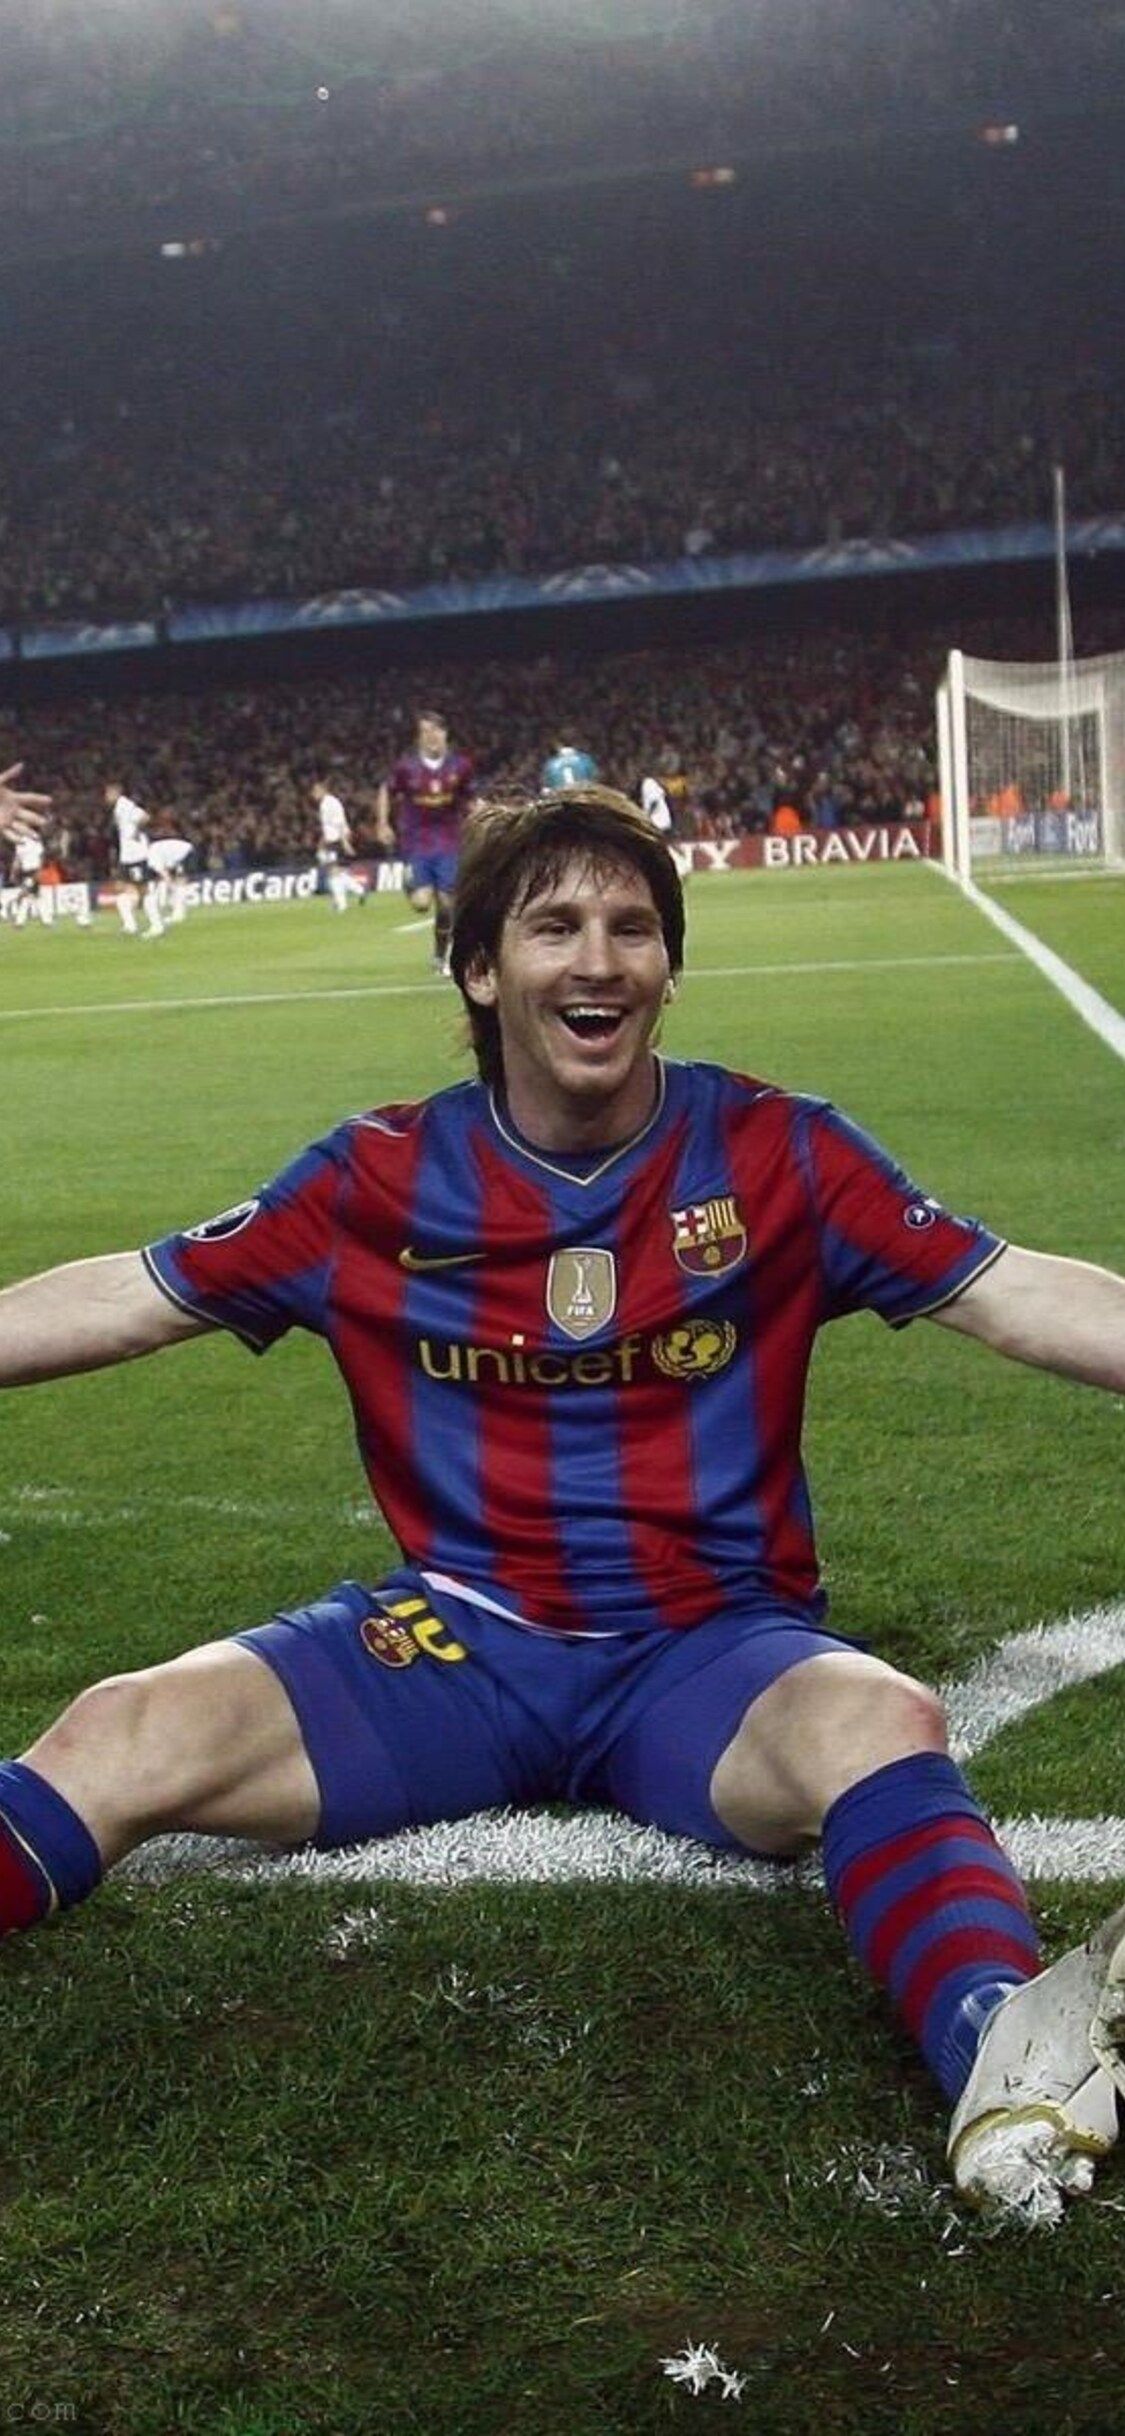 Messi là tên tuổi lừng lẫy của bóng đá thế giới. Và bây giờ, bạn có thể thấy những bức ảnh nền iPhone 4k với chủ đề Messi cực kỳ sống động và tuyệt đẹp. Mỗi lần nhìn vào chiếc điện thoại của bạn, chắc chắn sẽ khiến bạn cảm thấy tự hào vì yêu thích và hâm mộ chàng cầu thủ xuất sắc này.